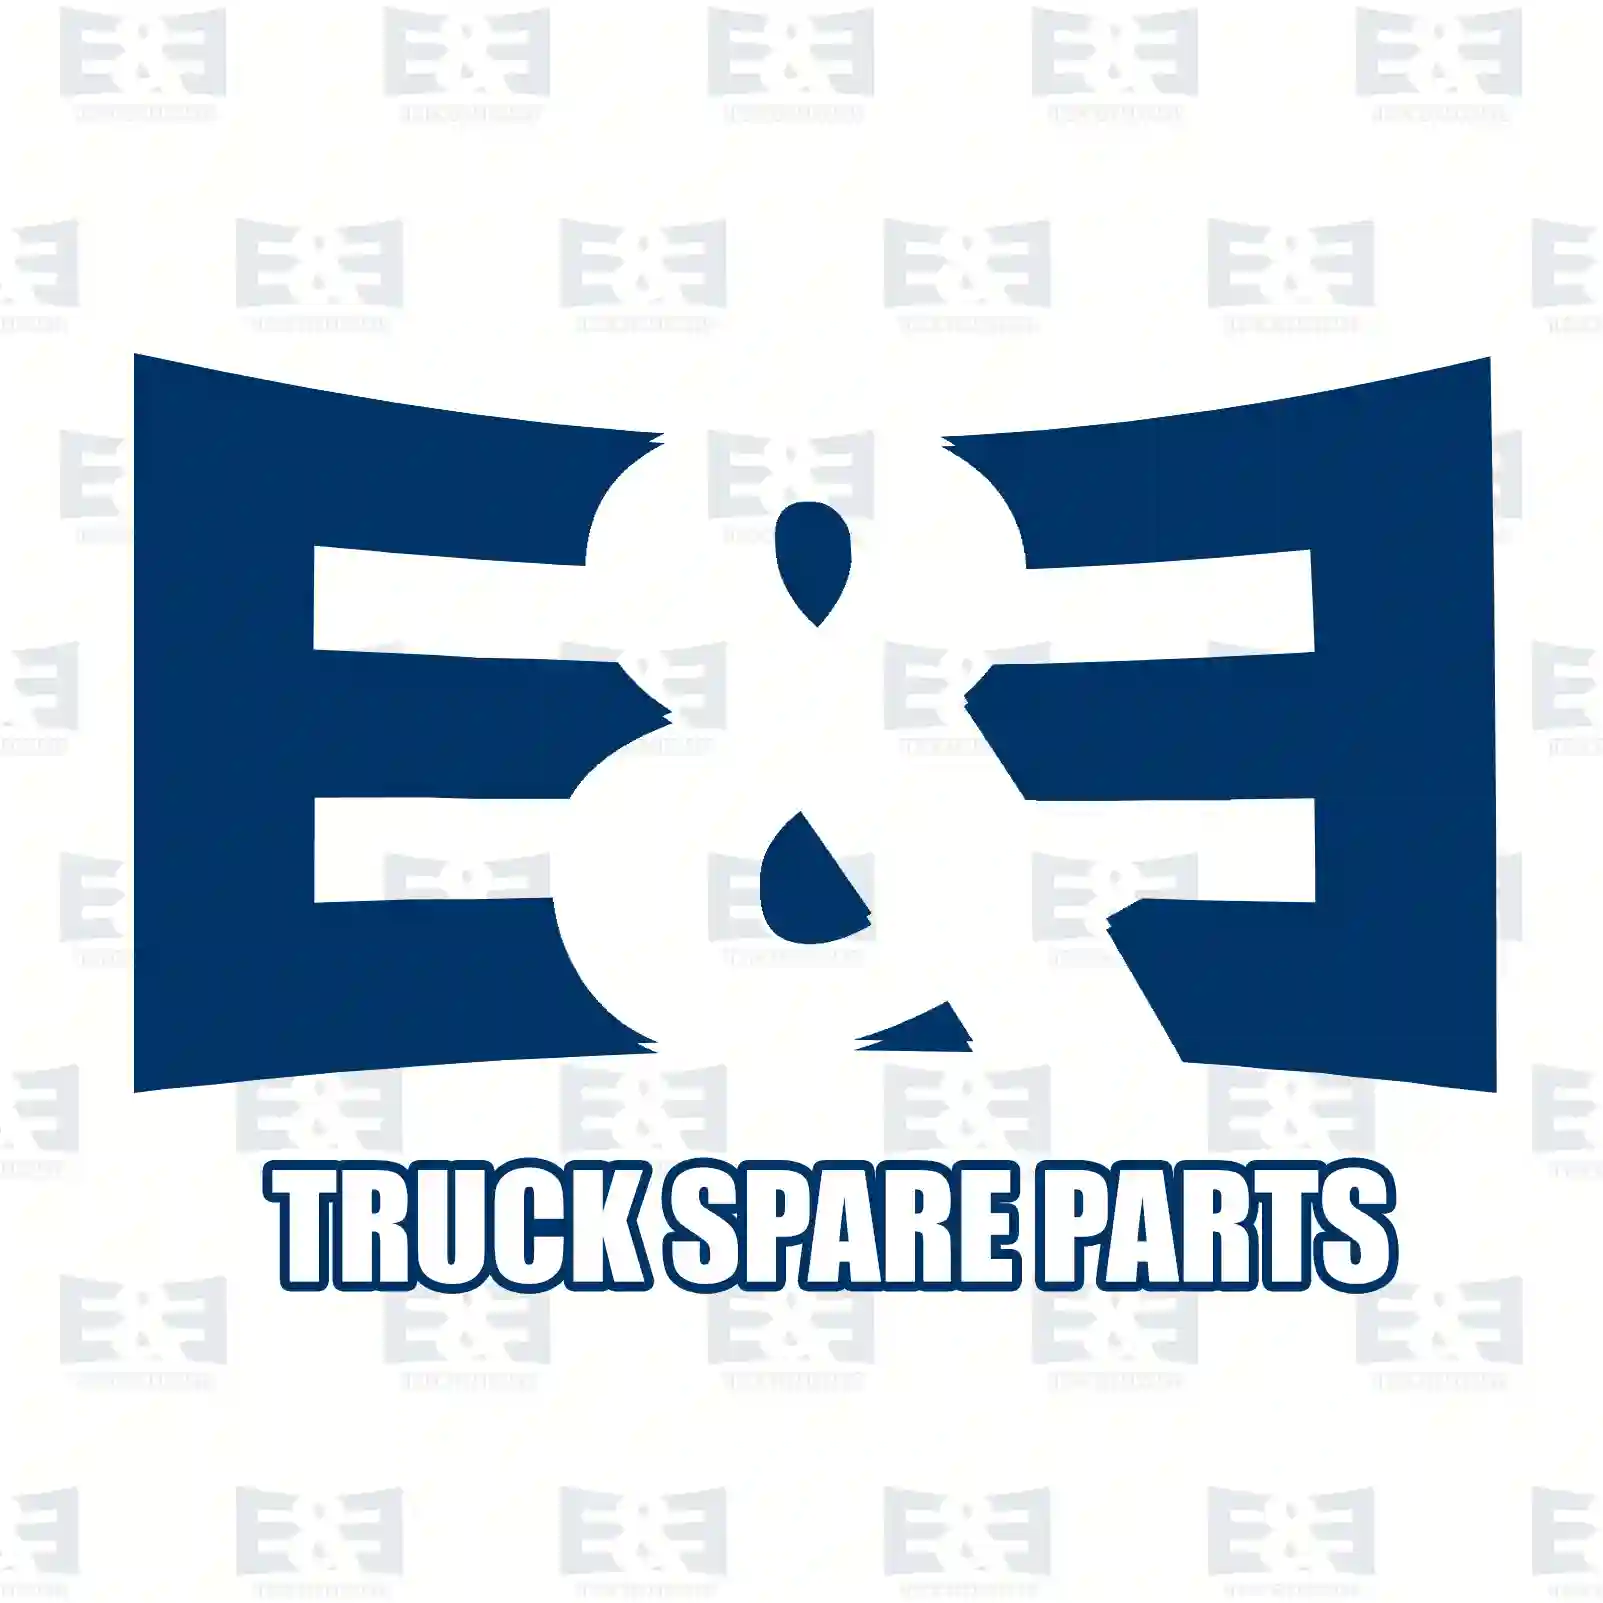 Level valve, 2E2283233, 0003283430, 000328343080, ZG50857-0008 ||  2E2283233 E&E Truck Spare Parts | Truck Spare Parts, Auotomotive Spare Parts Level valve, 2E2283233, 0003283430, 000328343080, ZG50857-0008 ||  2E2283233 E&E Truck Spare Parts | Truck Spare Parts, Auotomotive Spare Parts